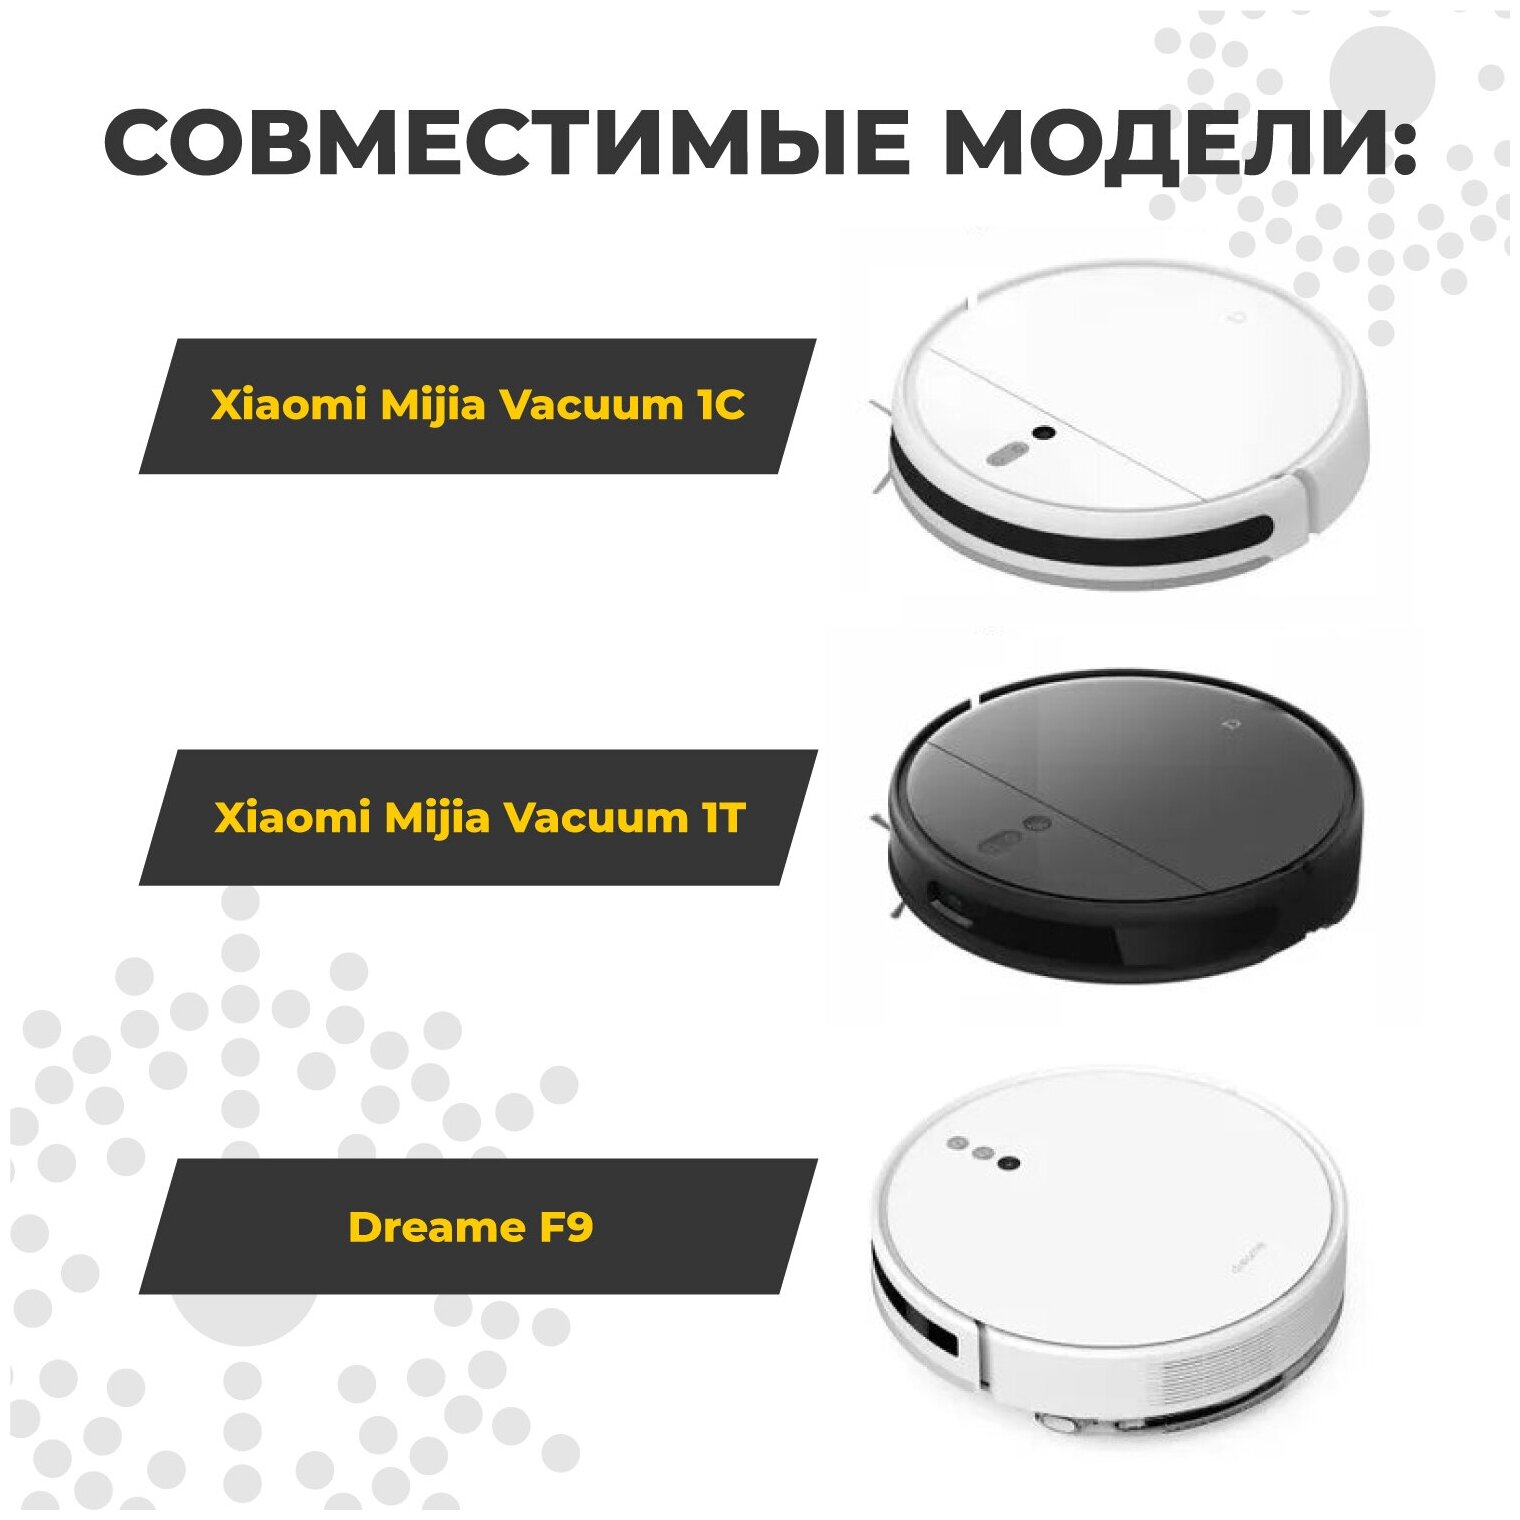 Набор аксессуаров для робот-пылесоса Xiaomi Mijia 1C, 1T, Dreame F9, комплект 8 предметов - фотография № 2